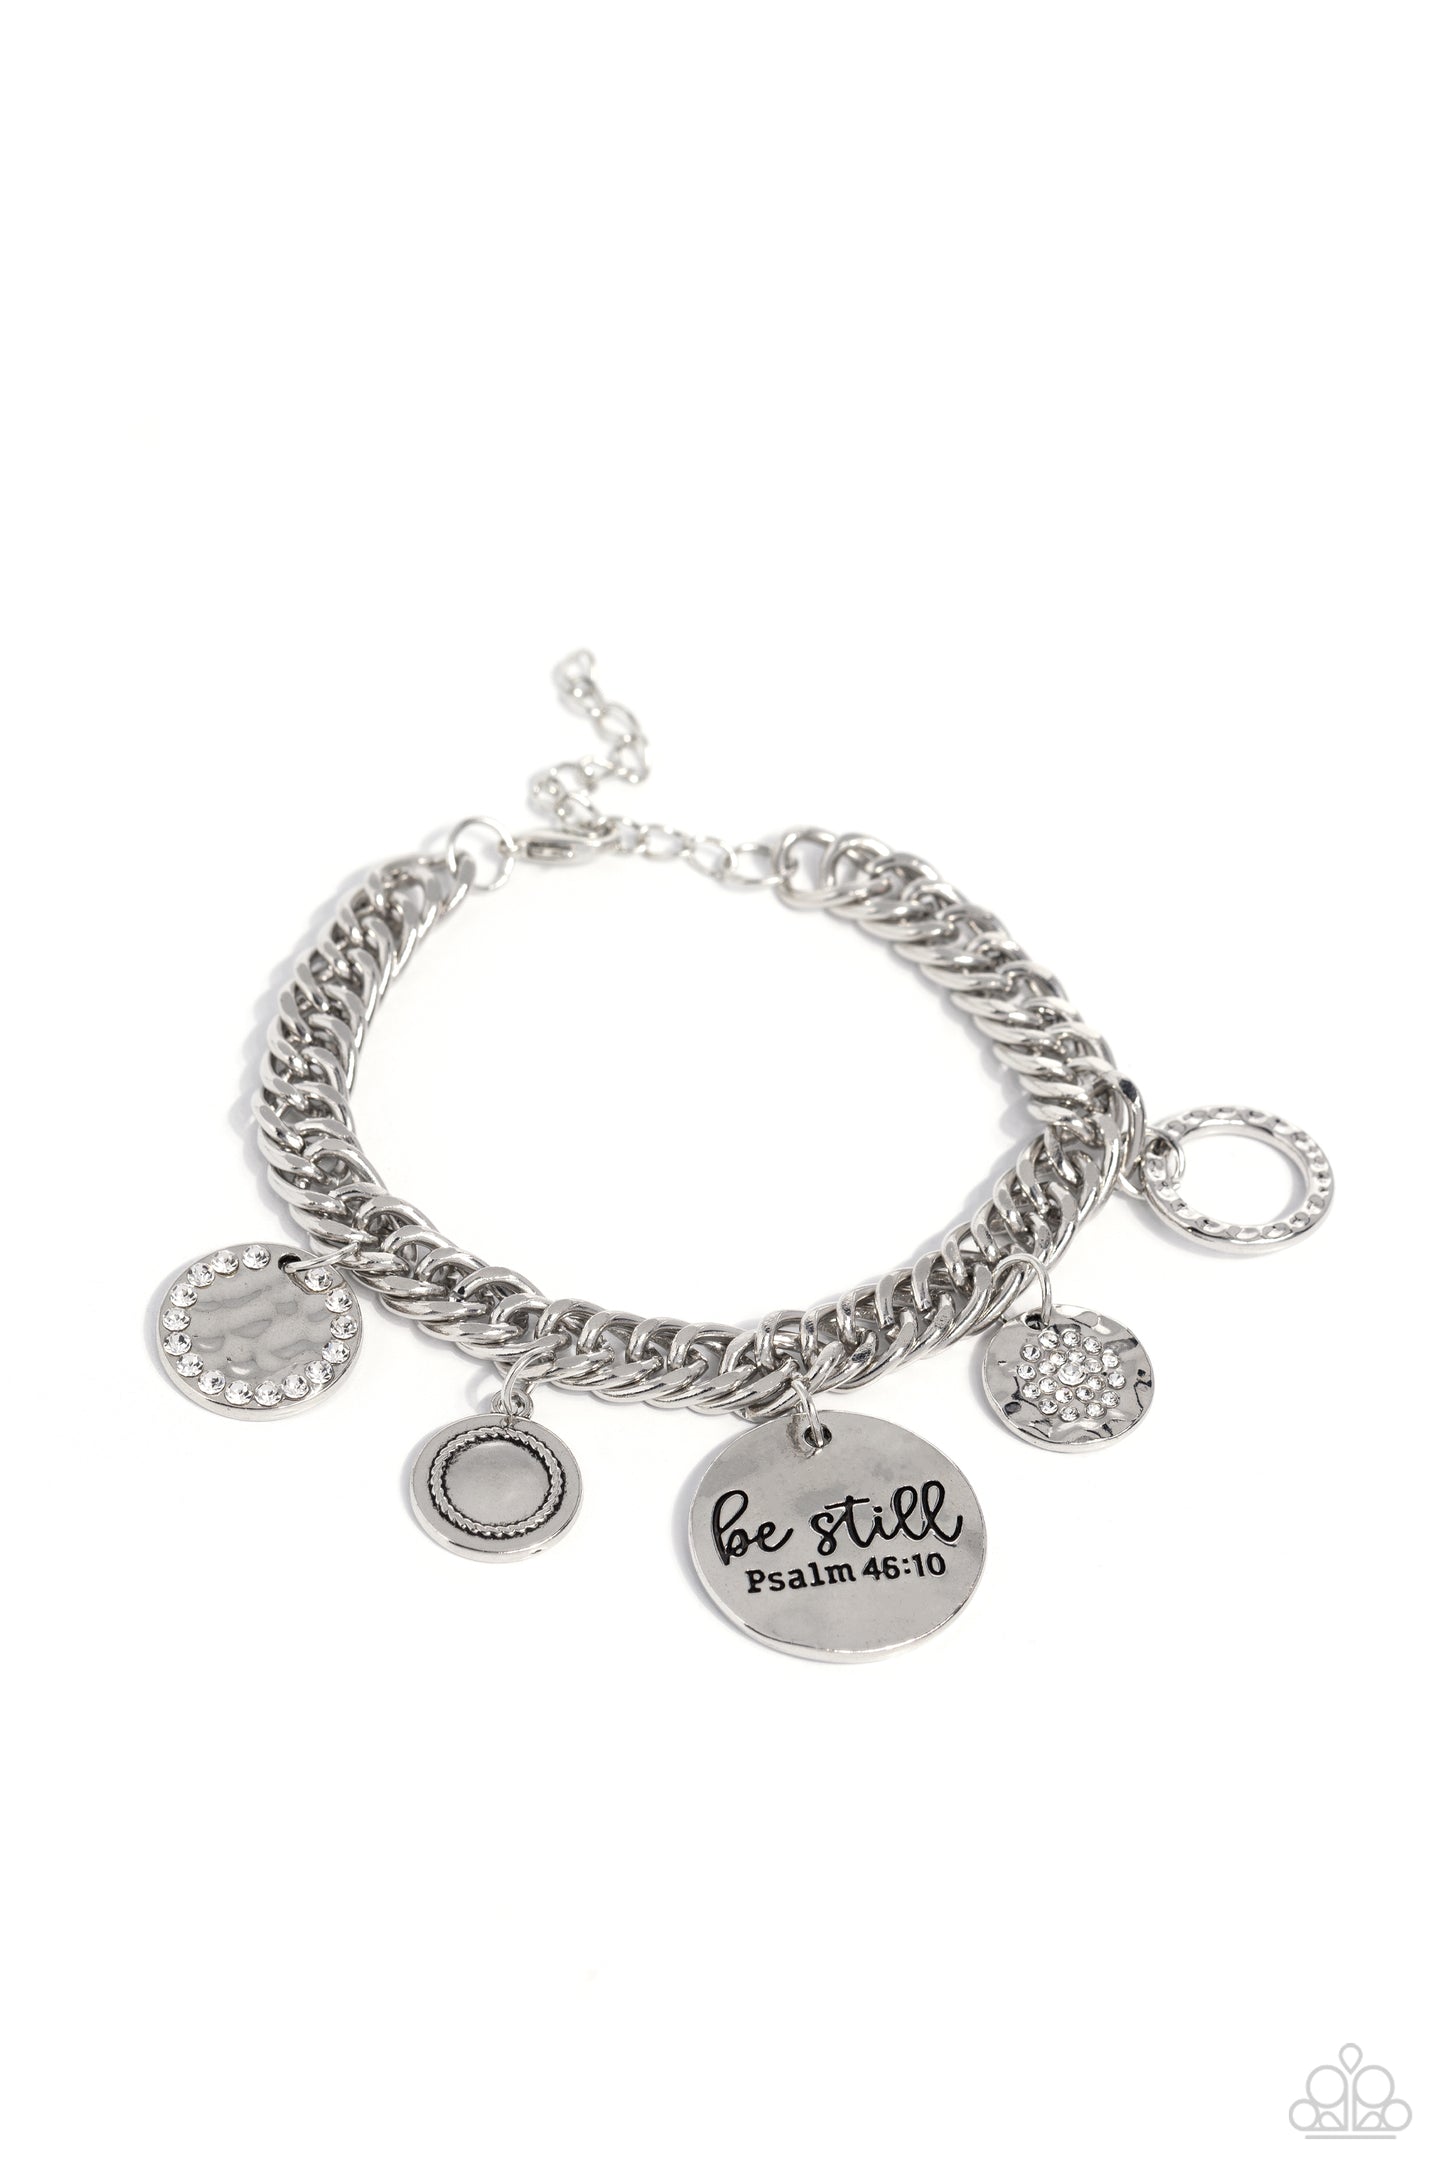 Be Still - Silver Necklace and Bracelet Set